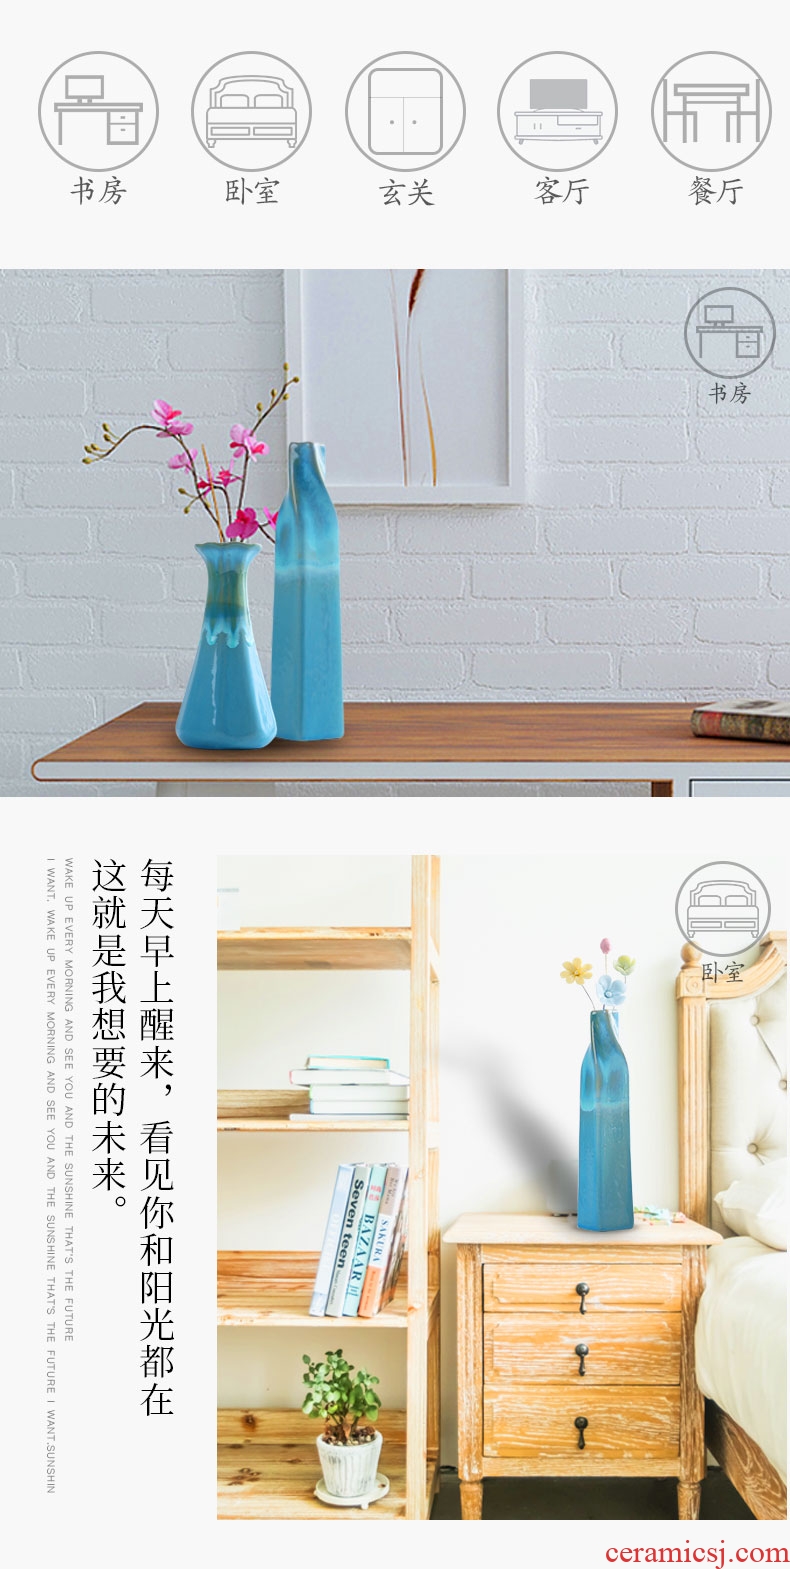 蓝色花瓶详情页-切片_04.jpg